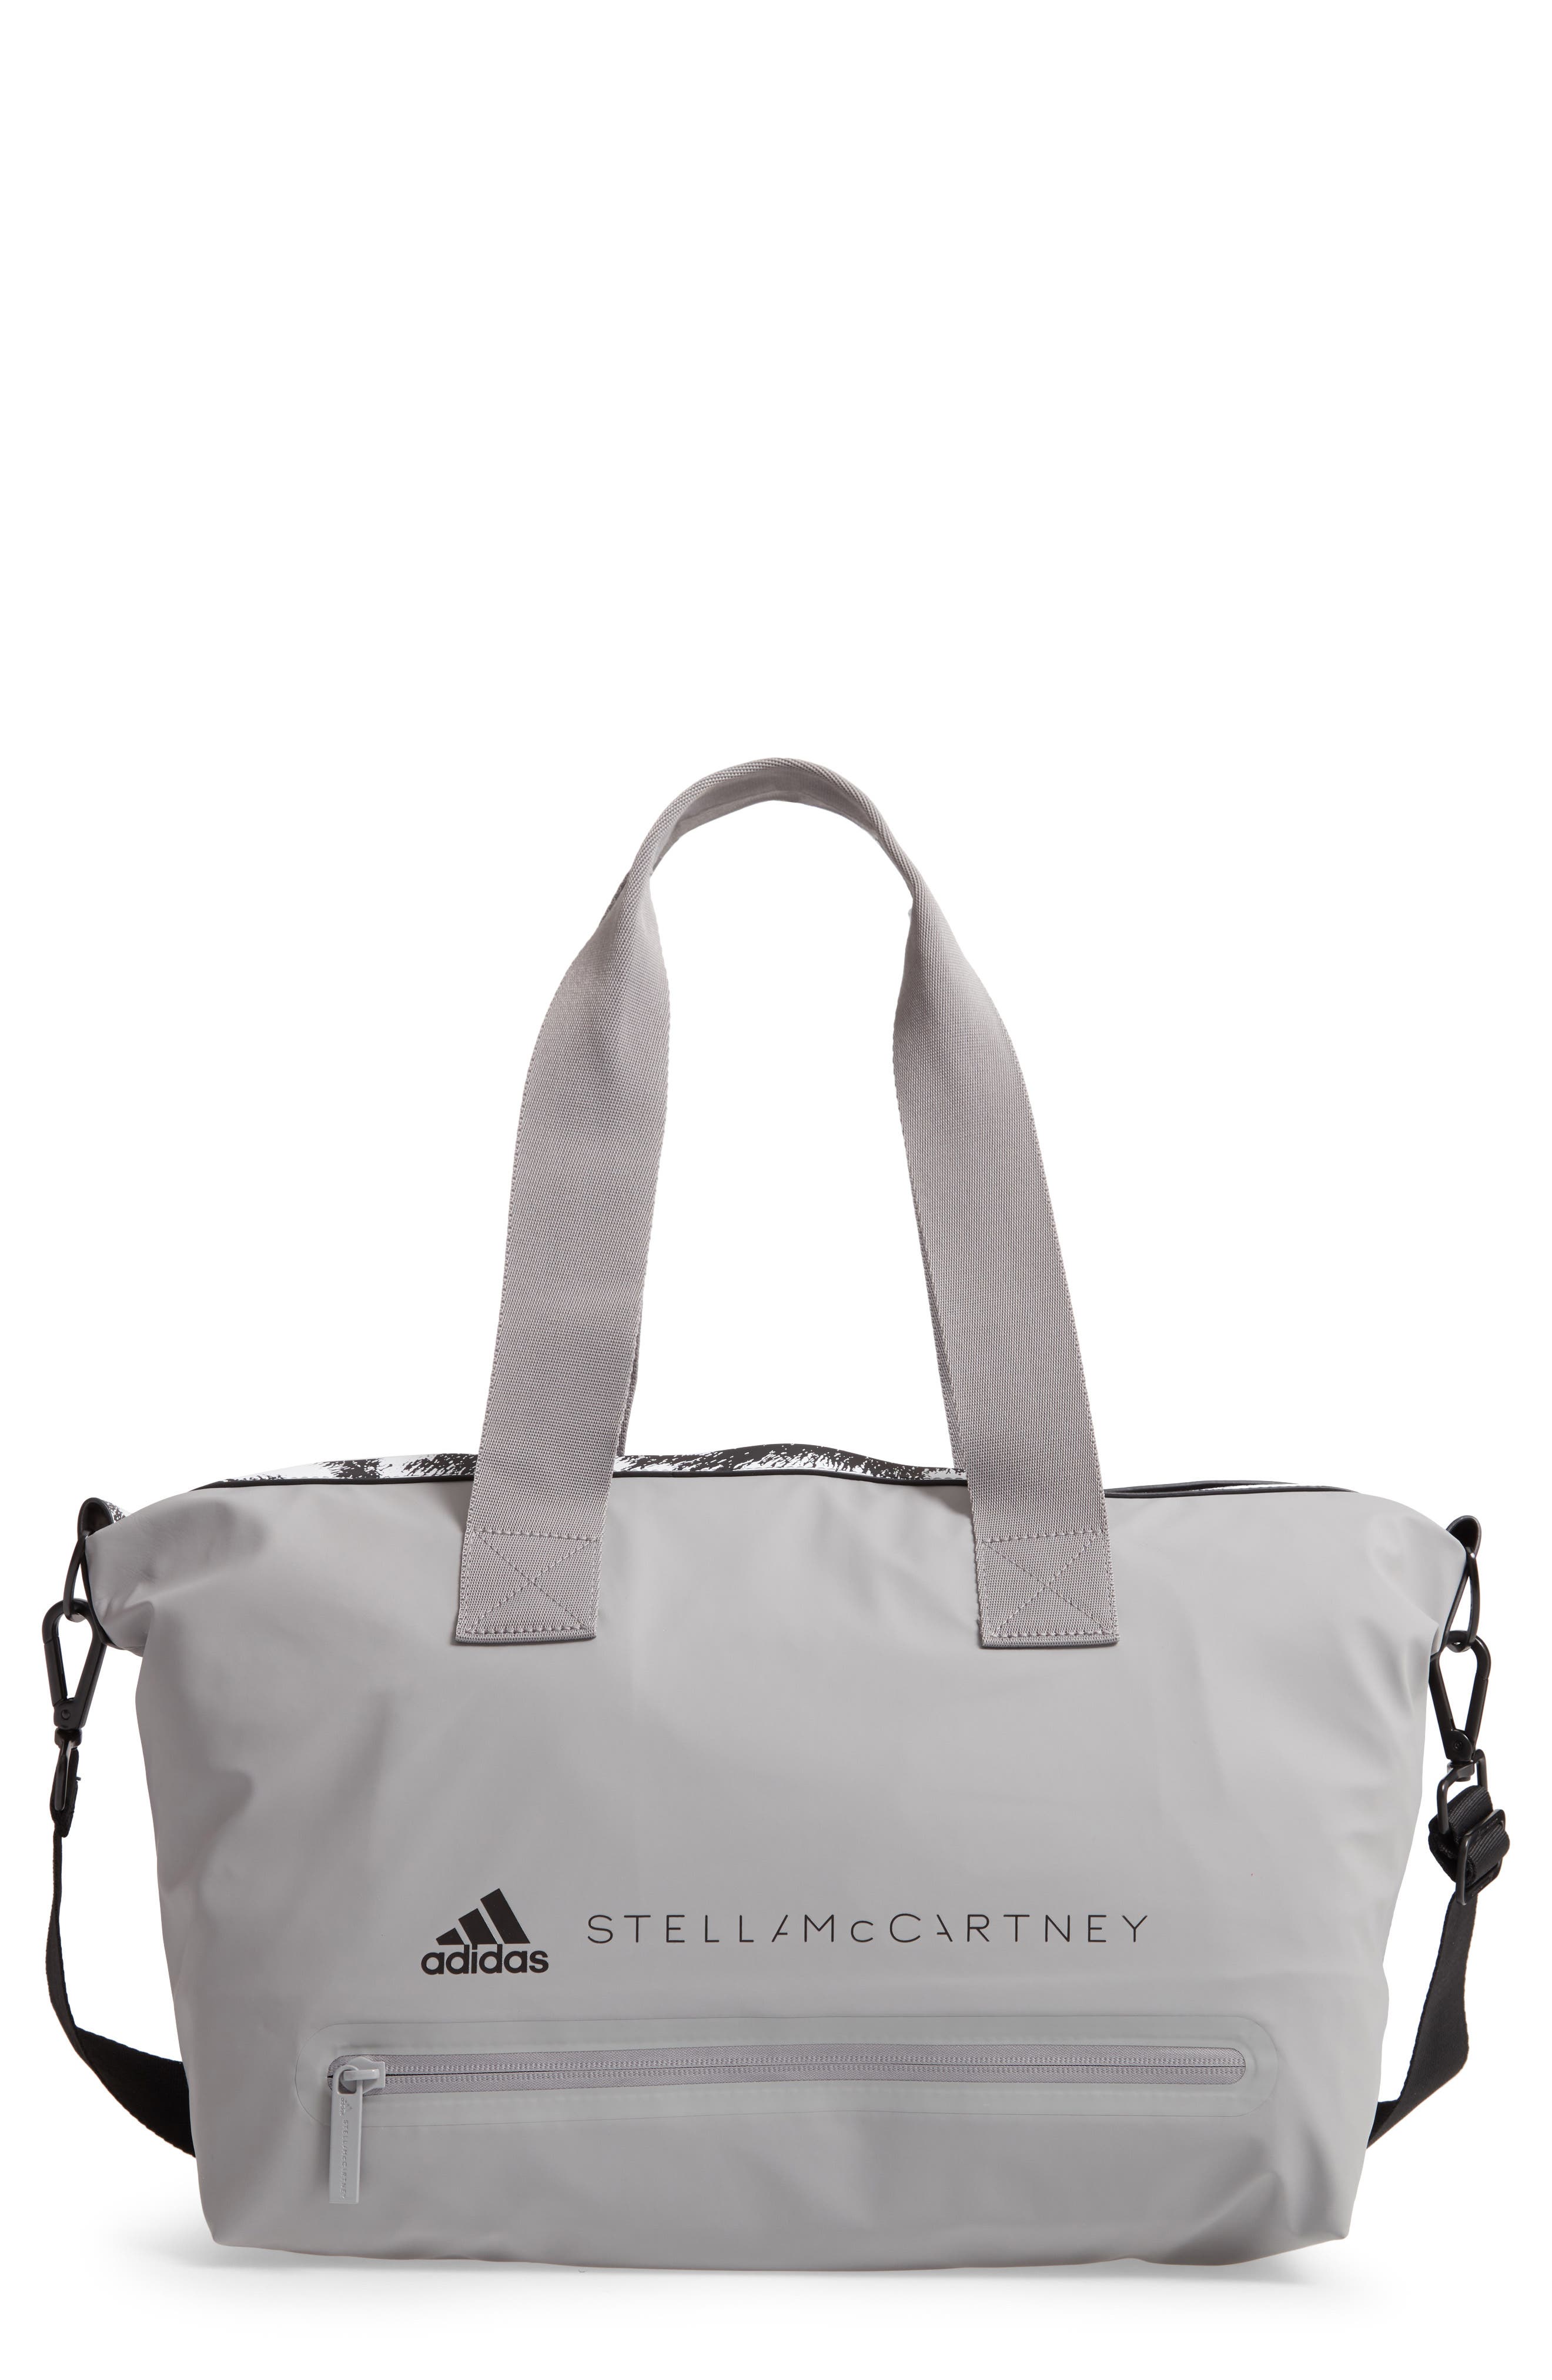 adidas by stella mccartney small studio bag